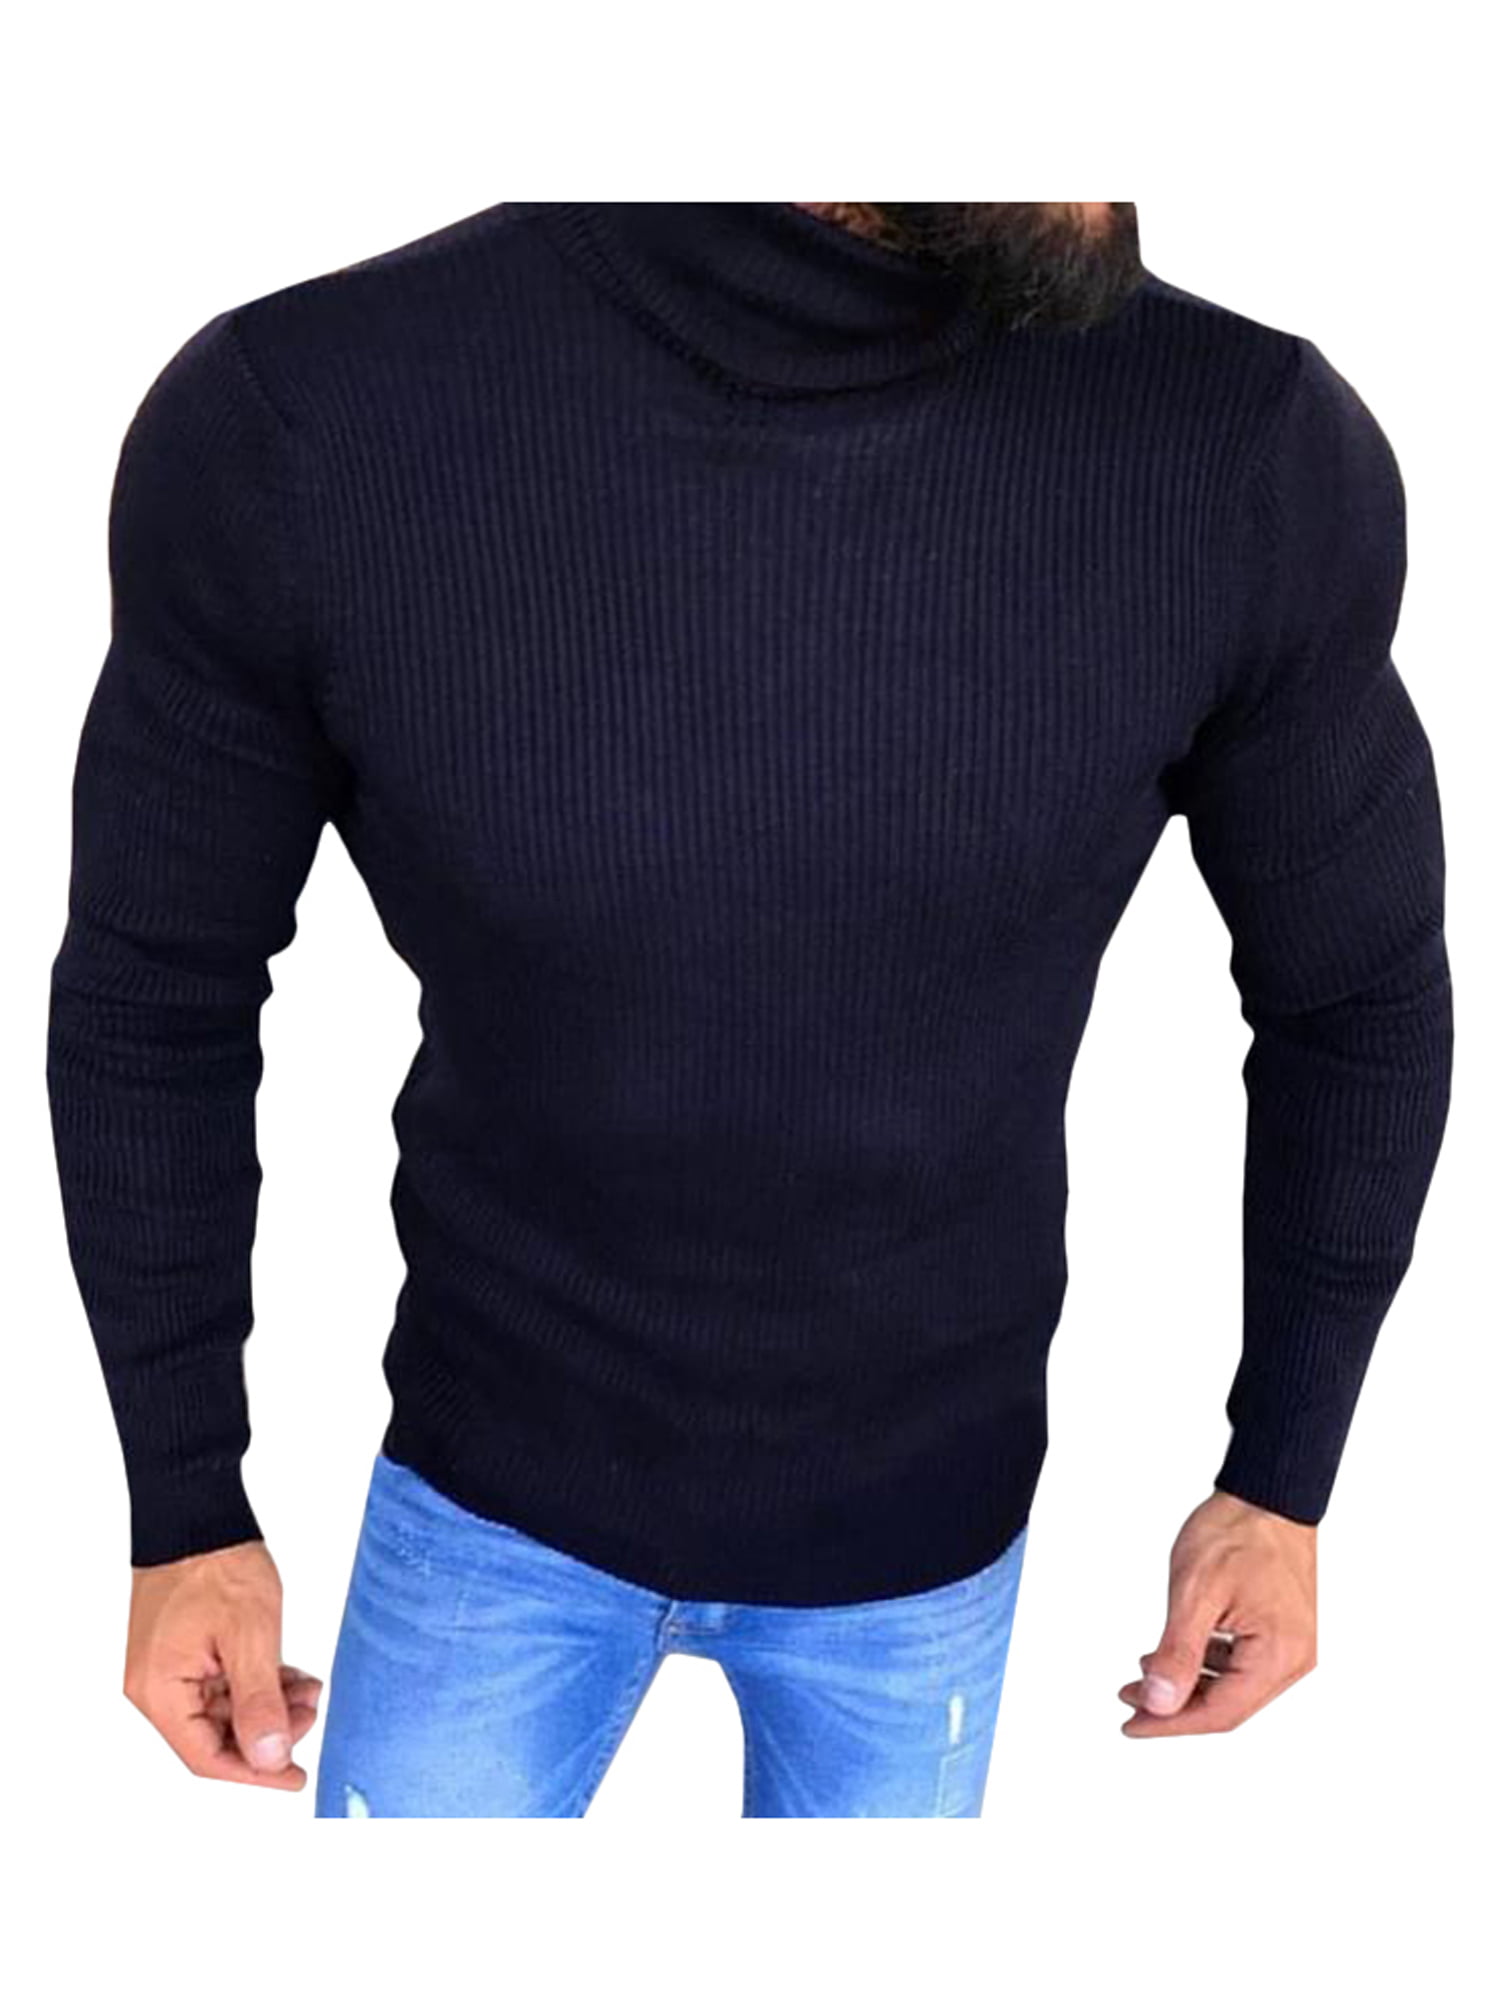 Winter Men's Turtleneck Sweater Long Sleeve Pullover Jumper Knitwear Slim Fit